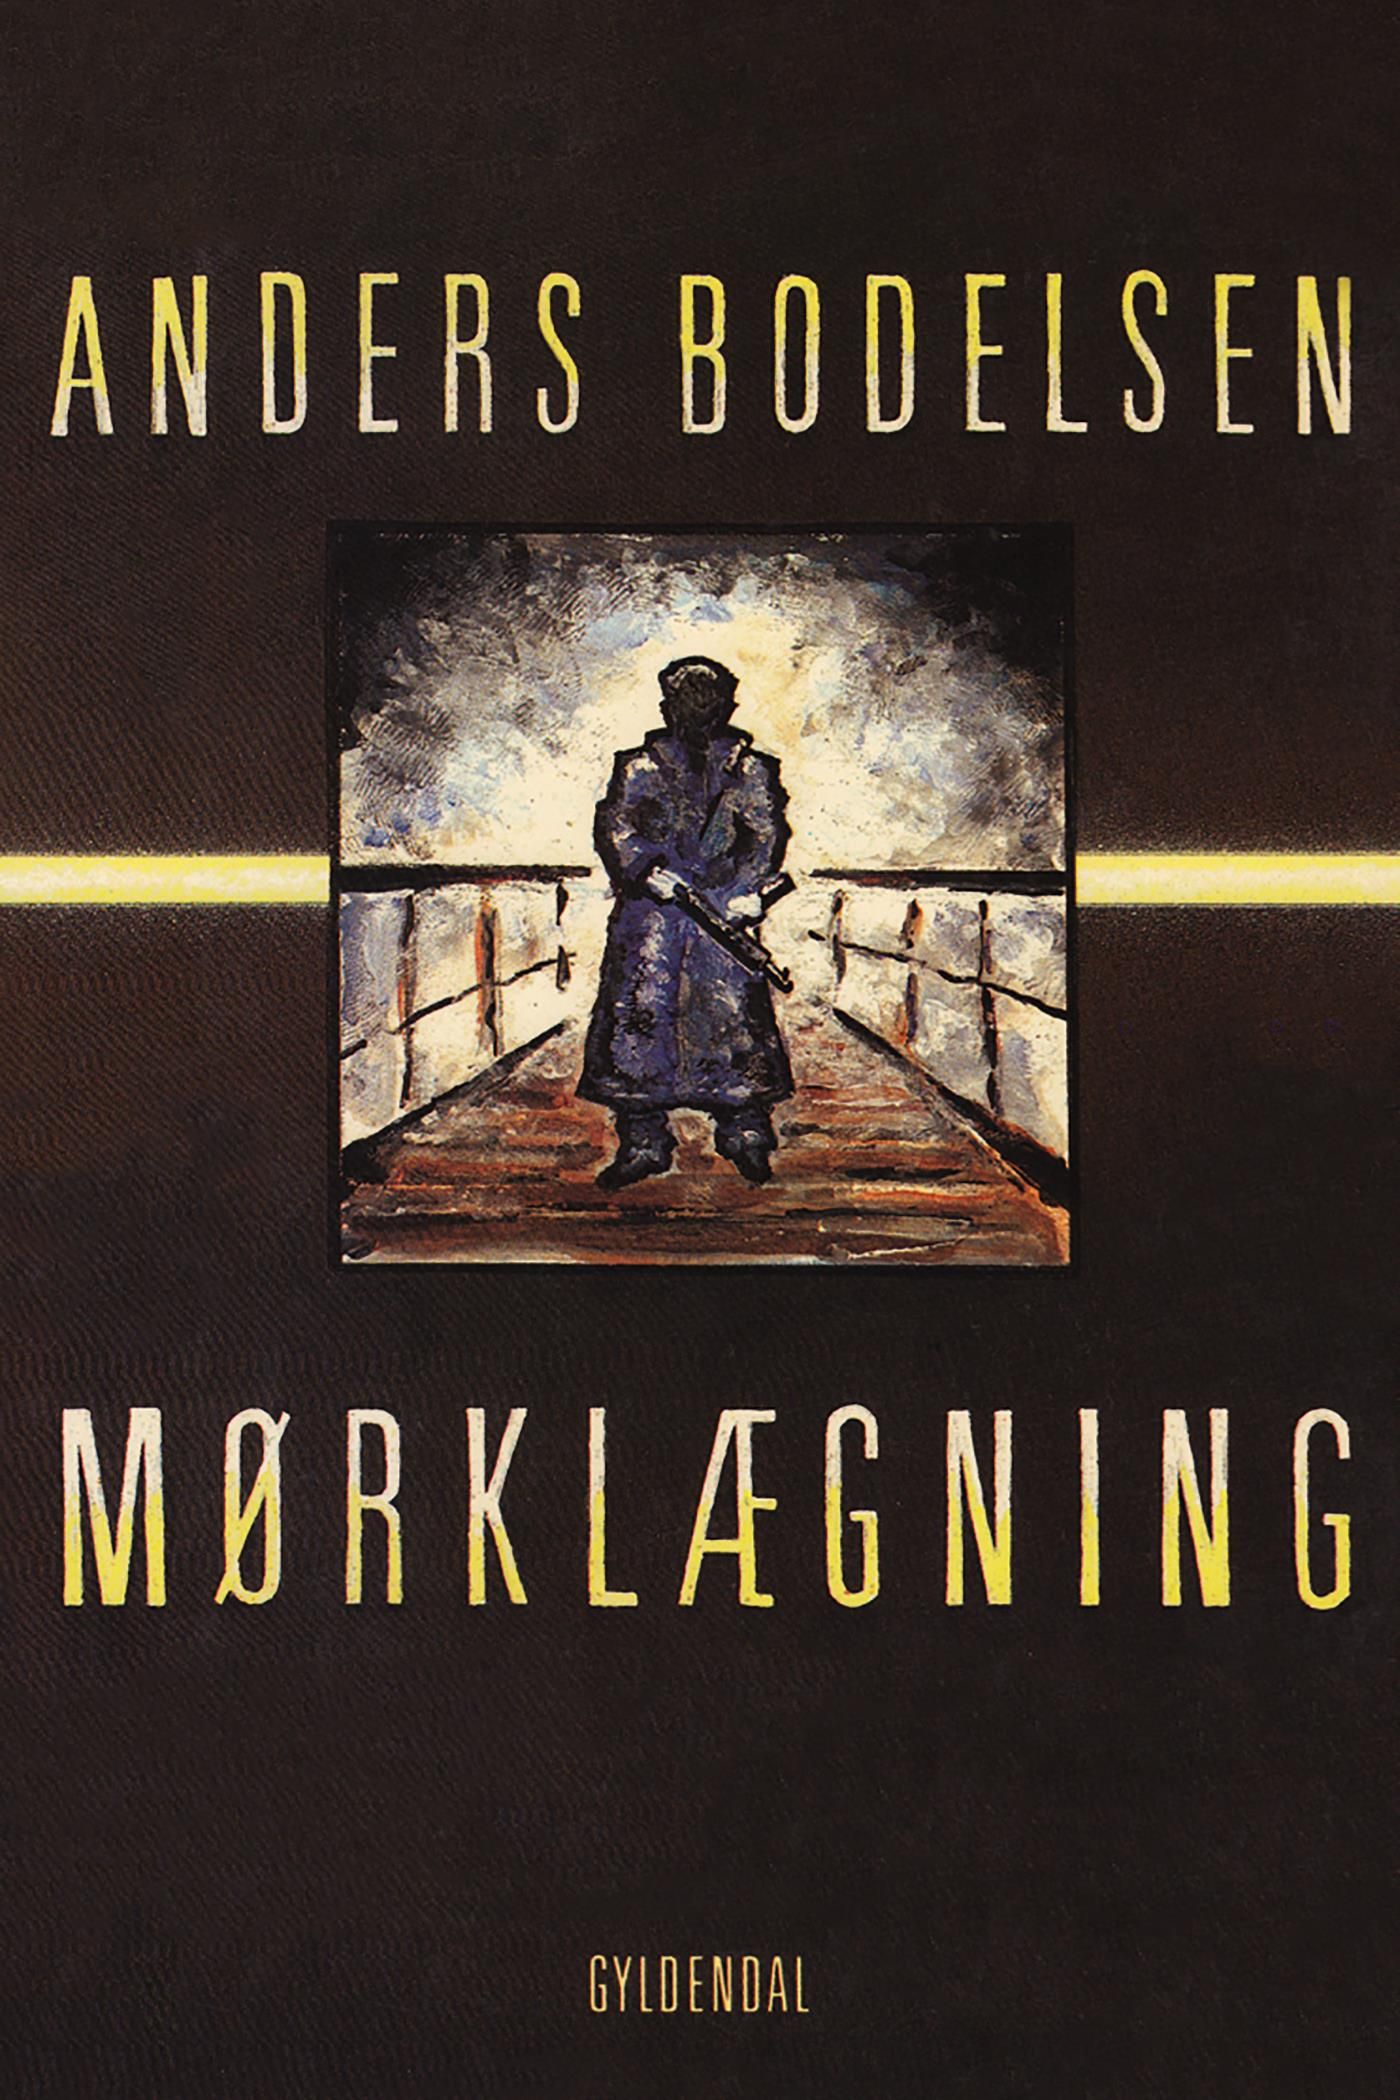 Mørklægning, eBook by Anders Bodelsen